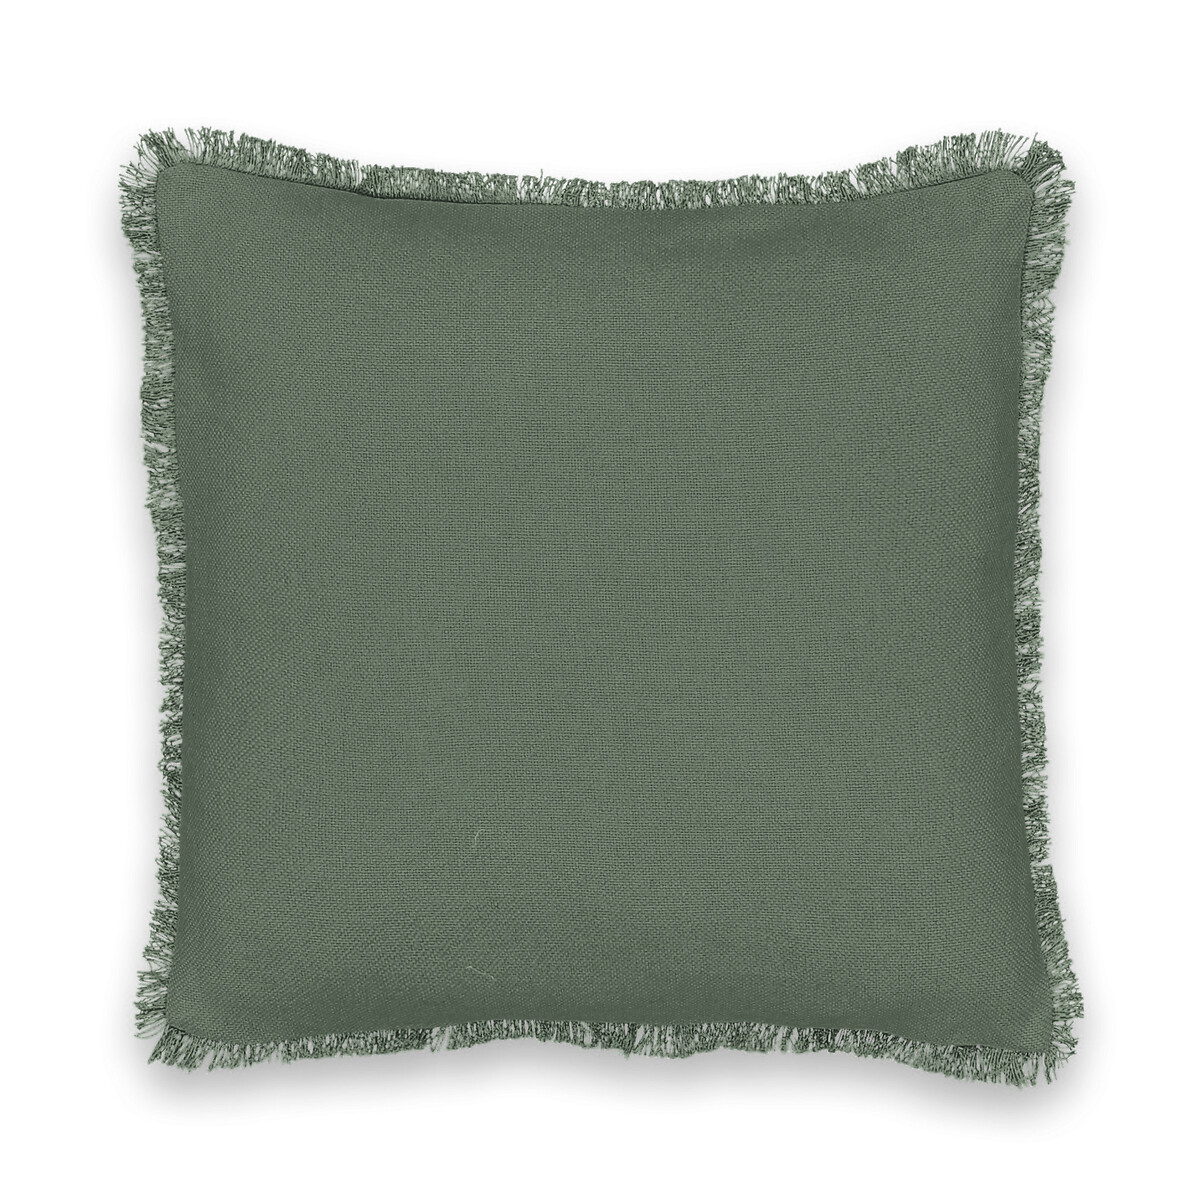 Чехол на подушку из плетеного хлопка Panama 40 x 40 см зеленый